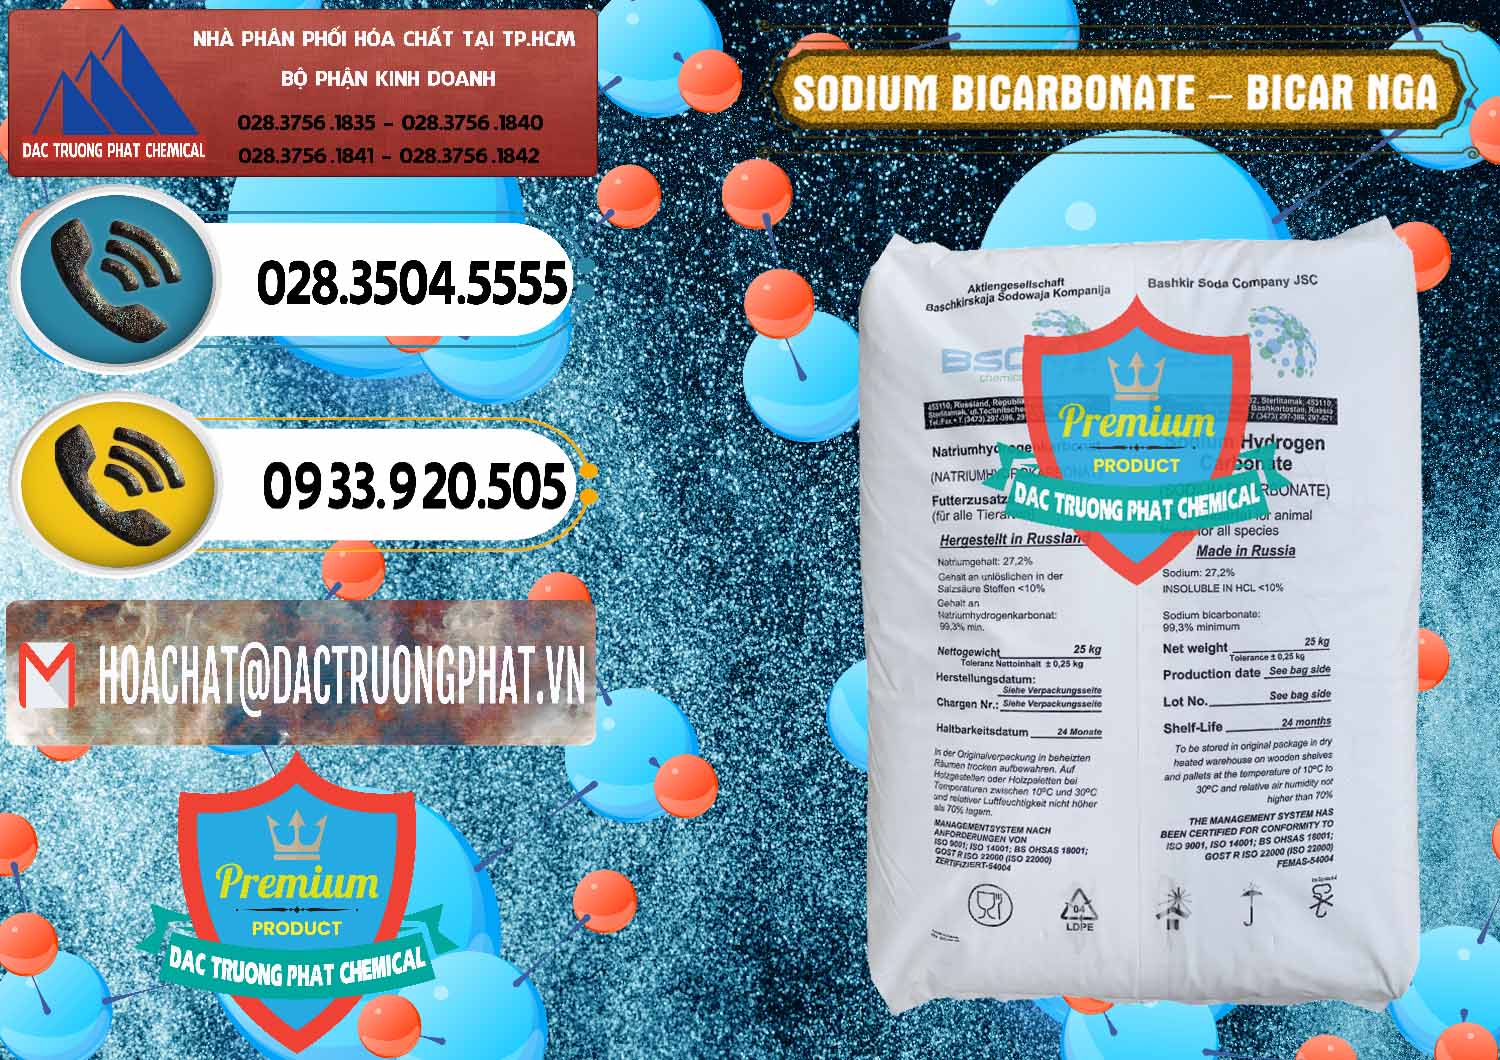 Chuyên bán & phân phối Sodium Bicarbonate – Bicar NaHCO3 Nga Russia - 0425 - Chuyên bán & phân phối hóa chất tại TP.HCM - hoachatdetnhuom.vn